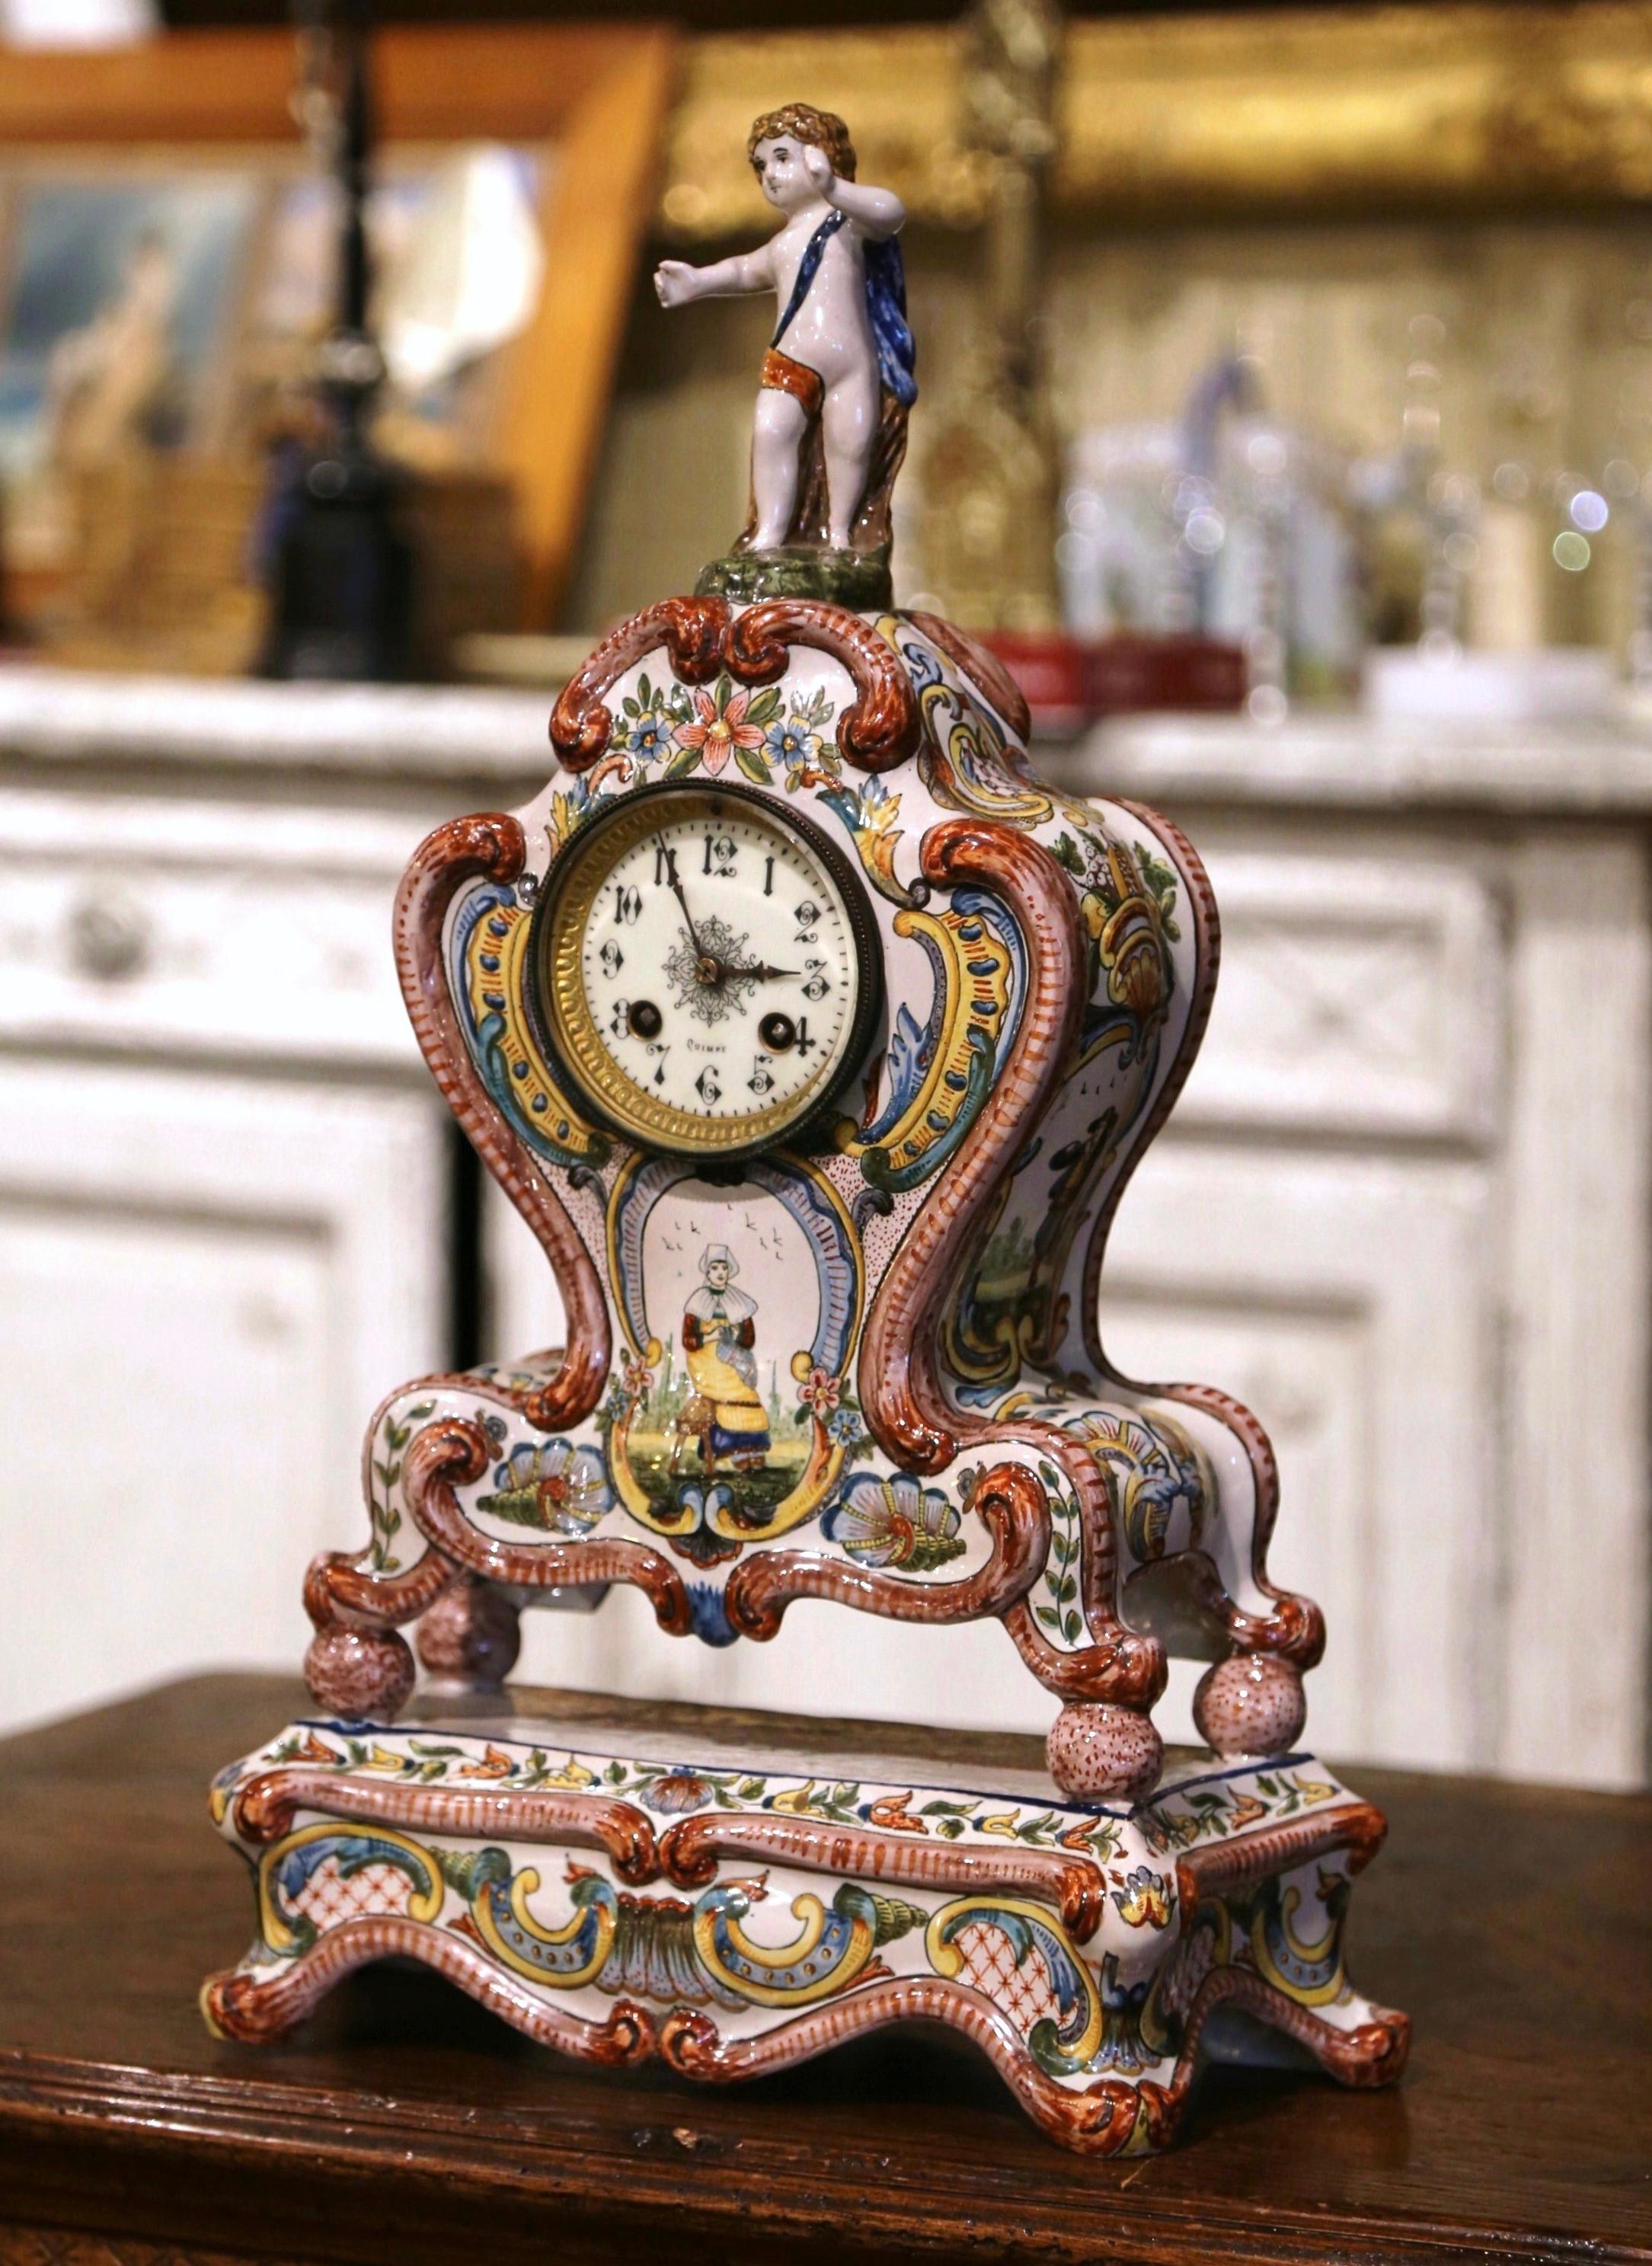 Décorez une cheminée ou une étagère avec cette horloge ancienne élégante et colorée. Fabriquée en Bretagne vers 1890, l'horloge en céramique repose sur une base attachée terminée par des pieds en volute, sur une façade en bombe avec un tablier